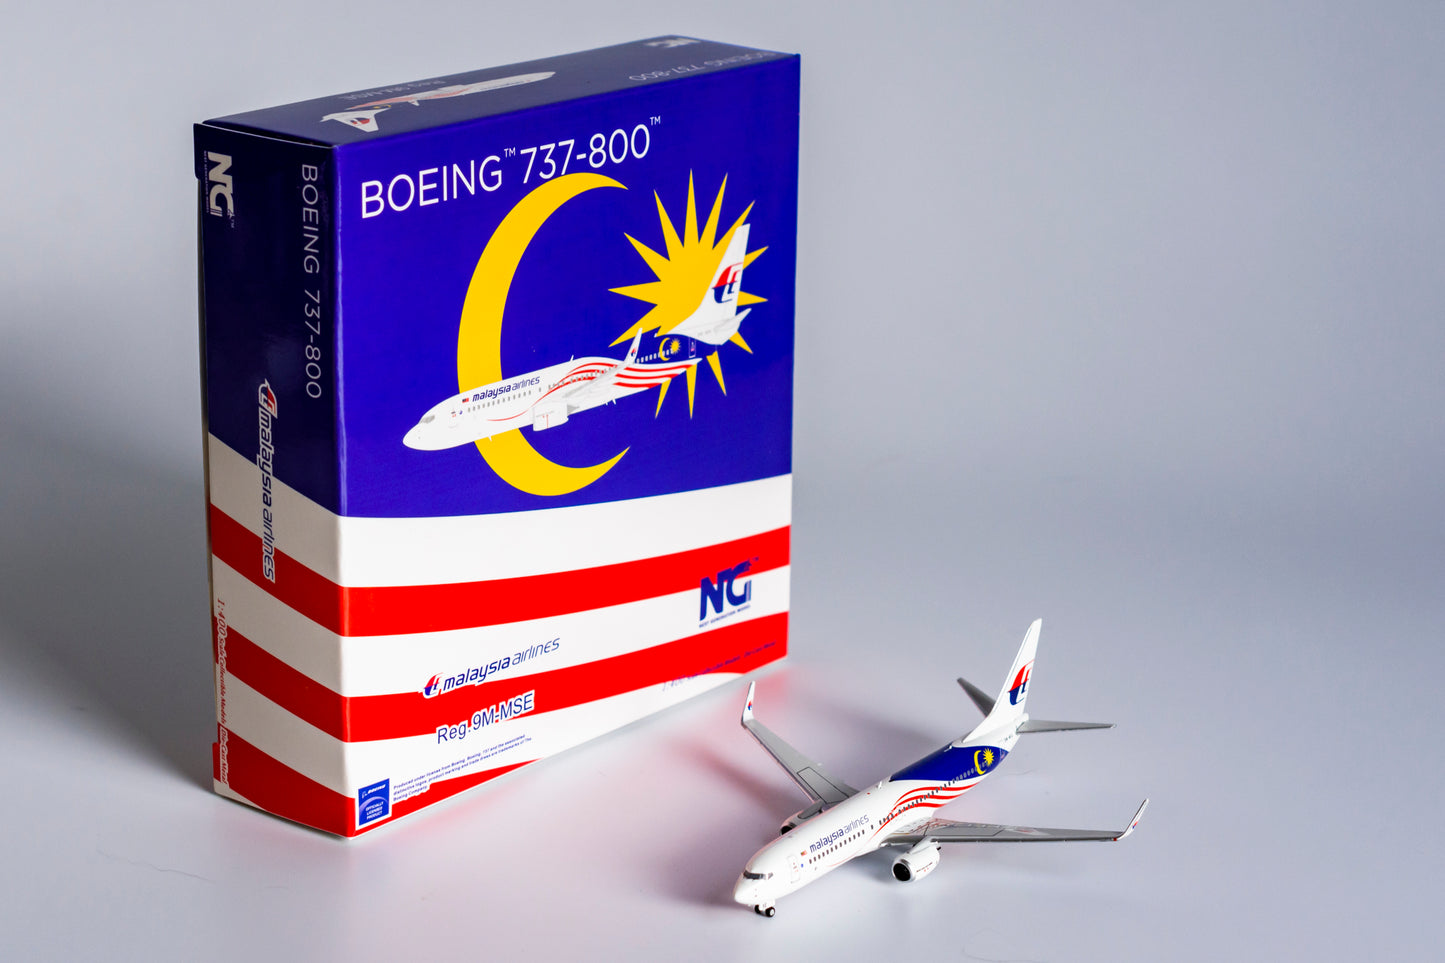 1:400 NG Models Malaysia Airlines Boeing 737-800 "Negaraku Colors" 9M-MSE NG58103